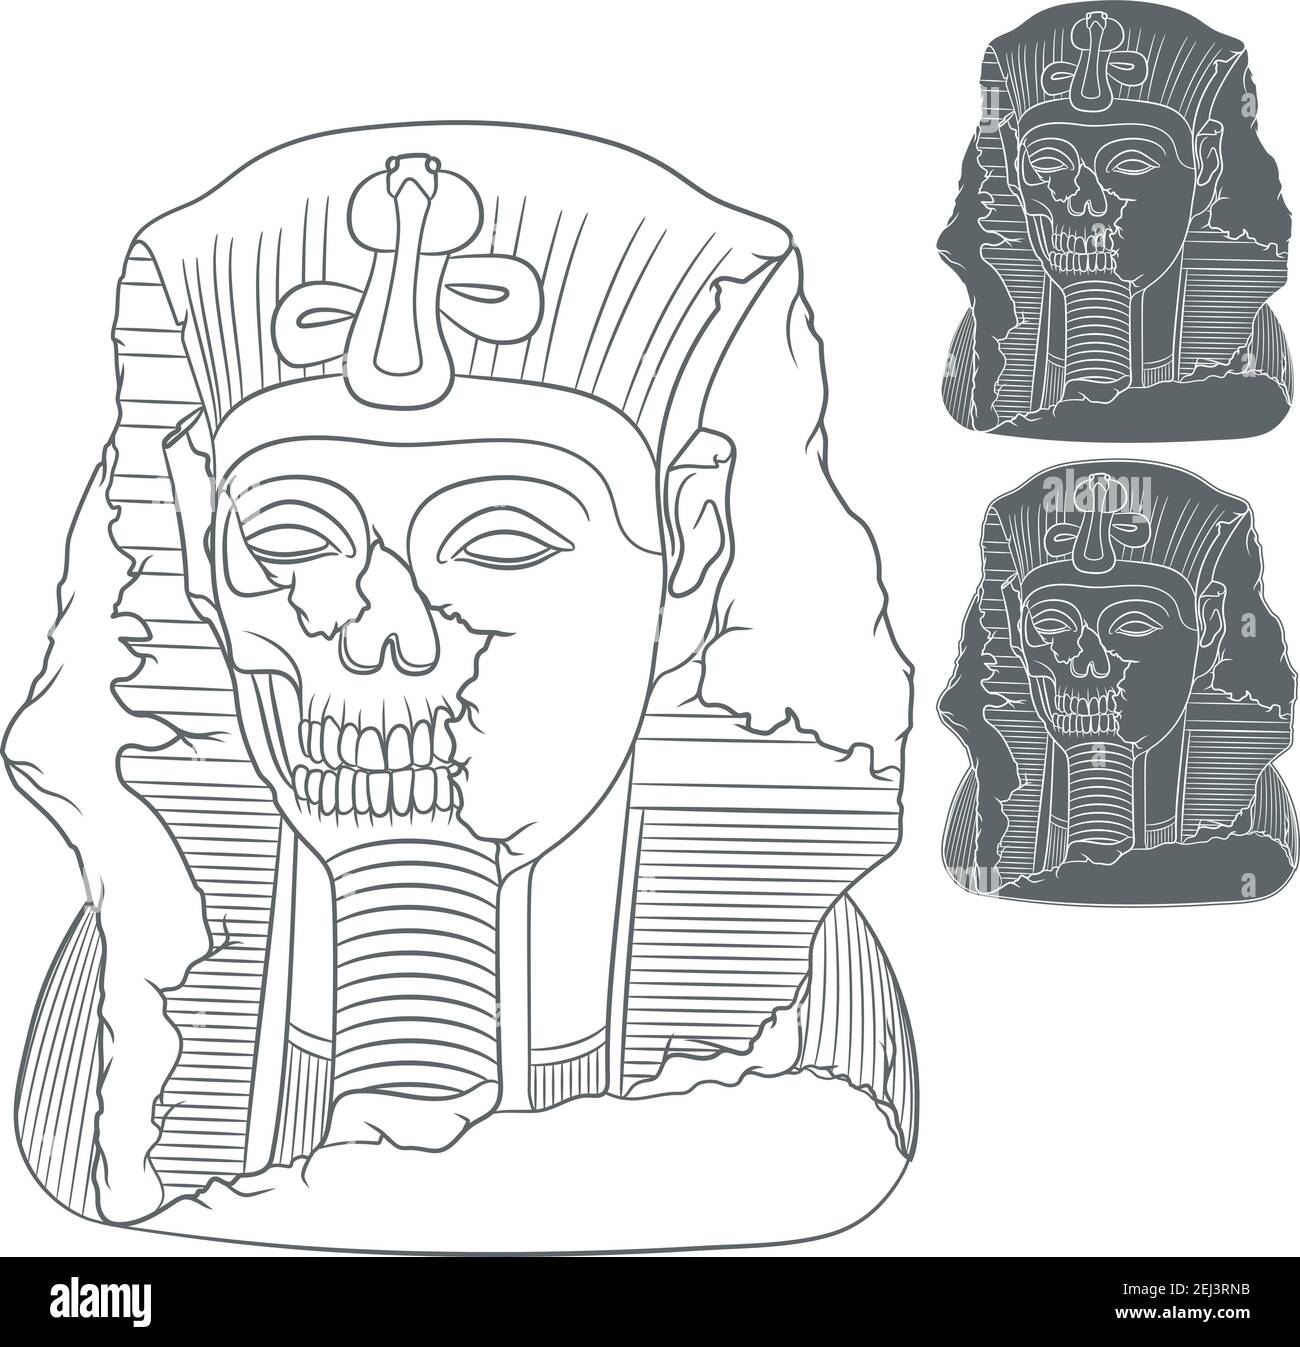 Alte pharao Statue eines Schädels. Satz von vektorisolierten Objekten auf weißem Hintergrund. Stock Vektor